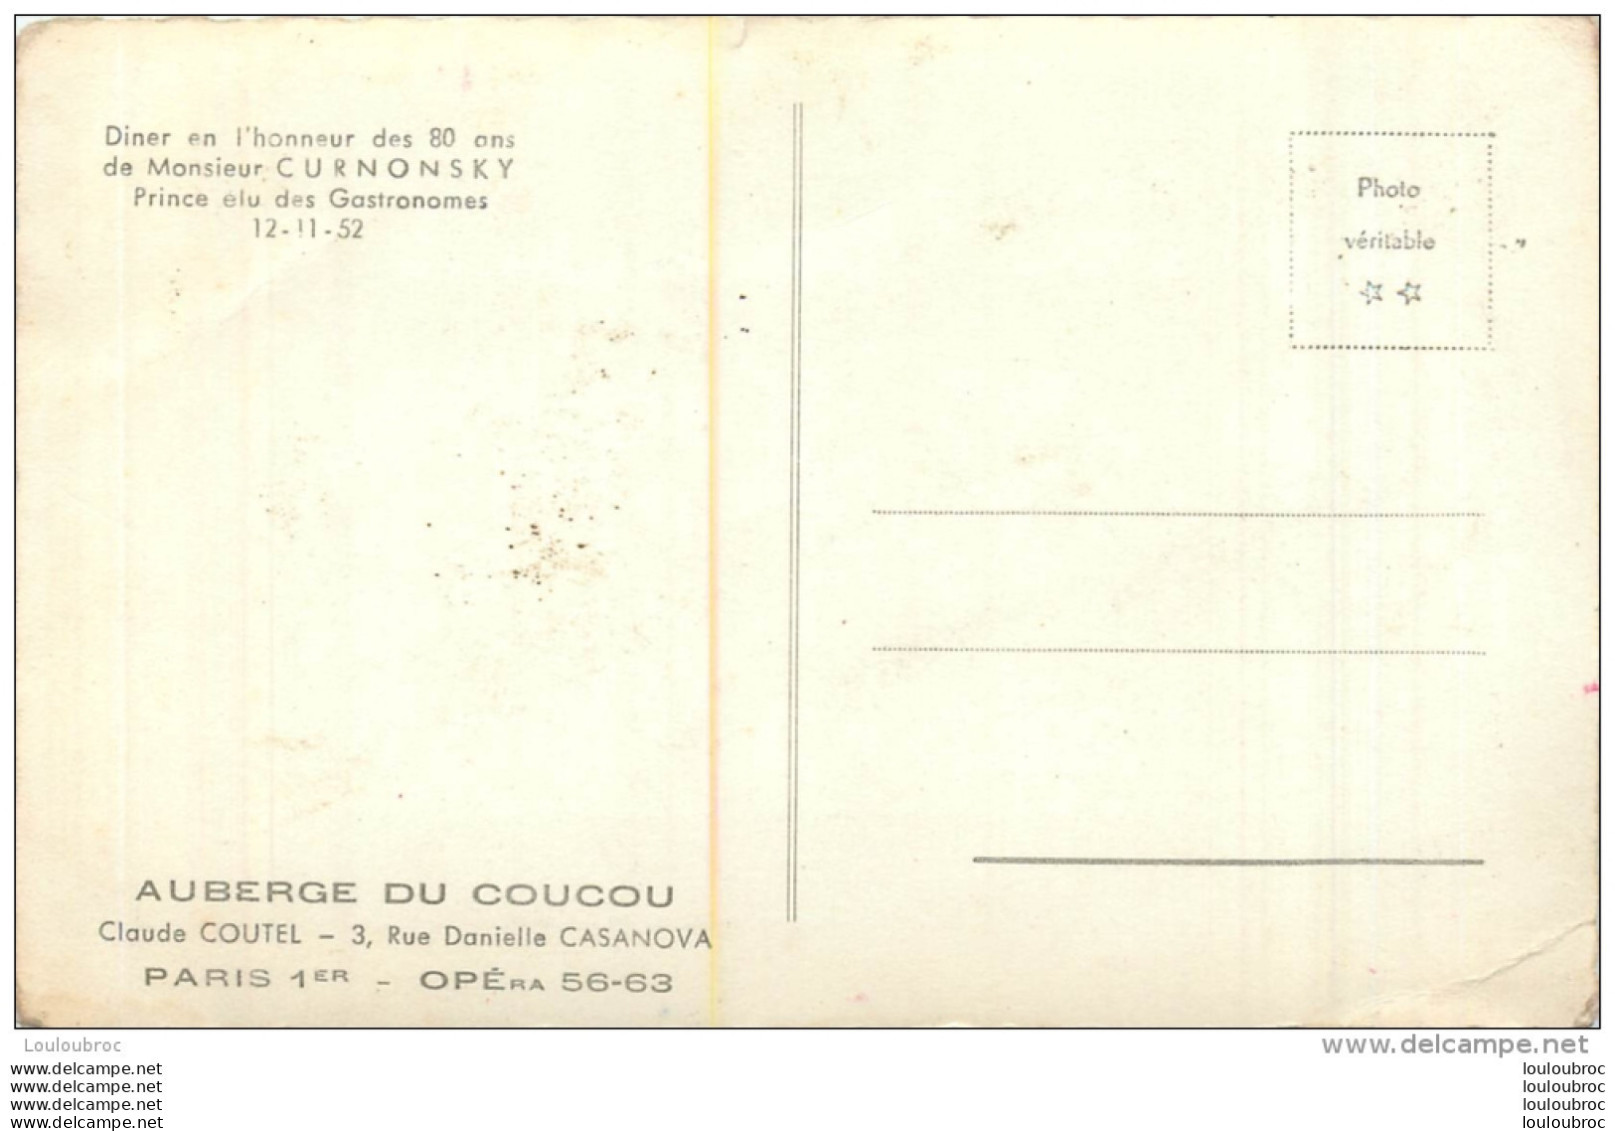 PARIS 1  AUBERGE DU COUCOU CLAUDE COUTEL 3 RUE D. CASANOVA  DINER EN HONNEUR A MR CURNONSKY 1952 - Paris (01)